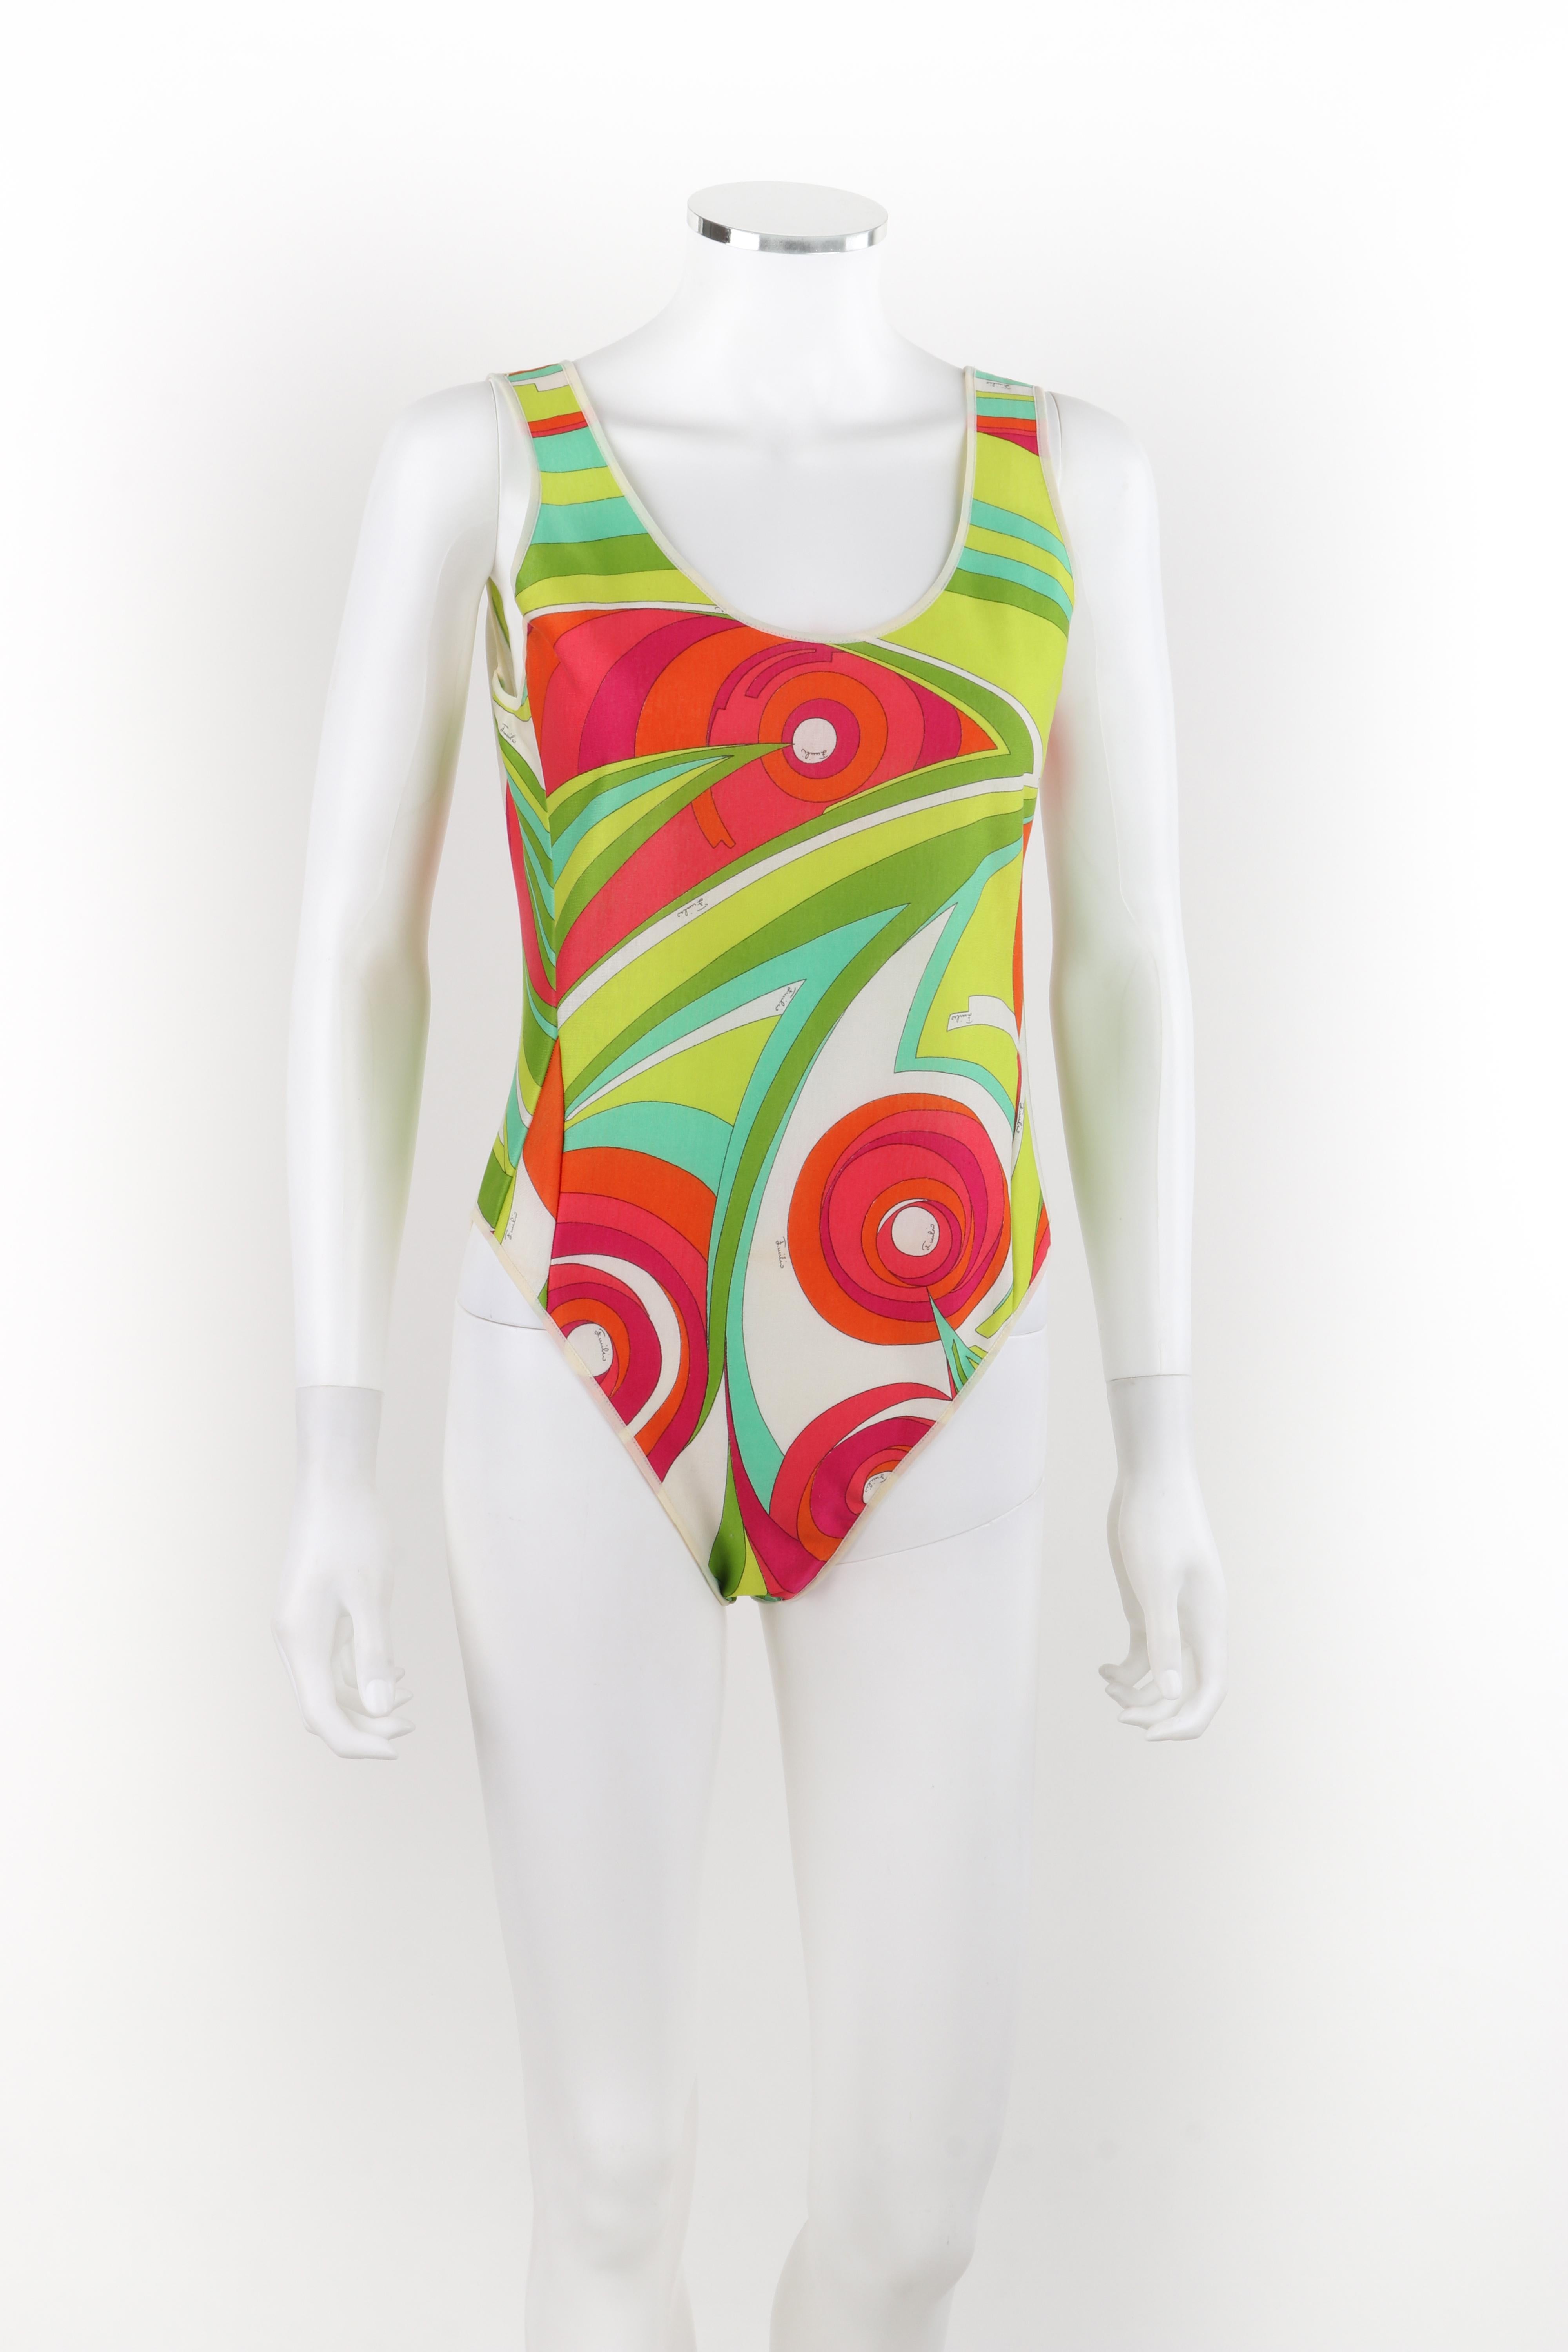 EMILIO PUCCI, combinaison de bain une pièce Op Art multicolore, années 1970 Bon état - En vente à Thiensville, WI